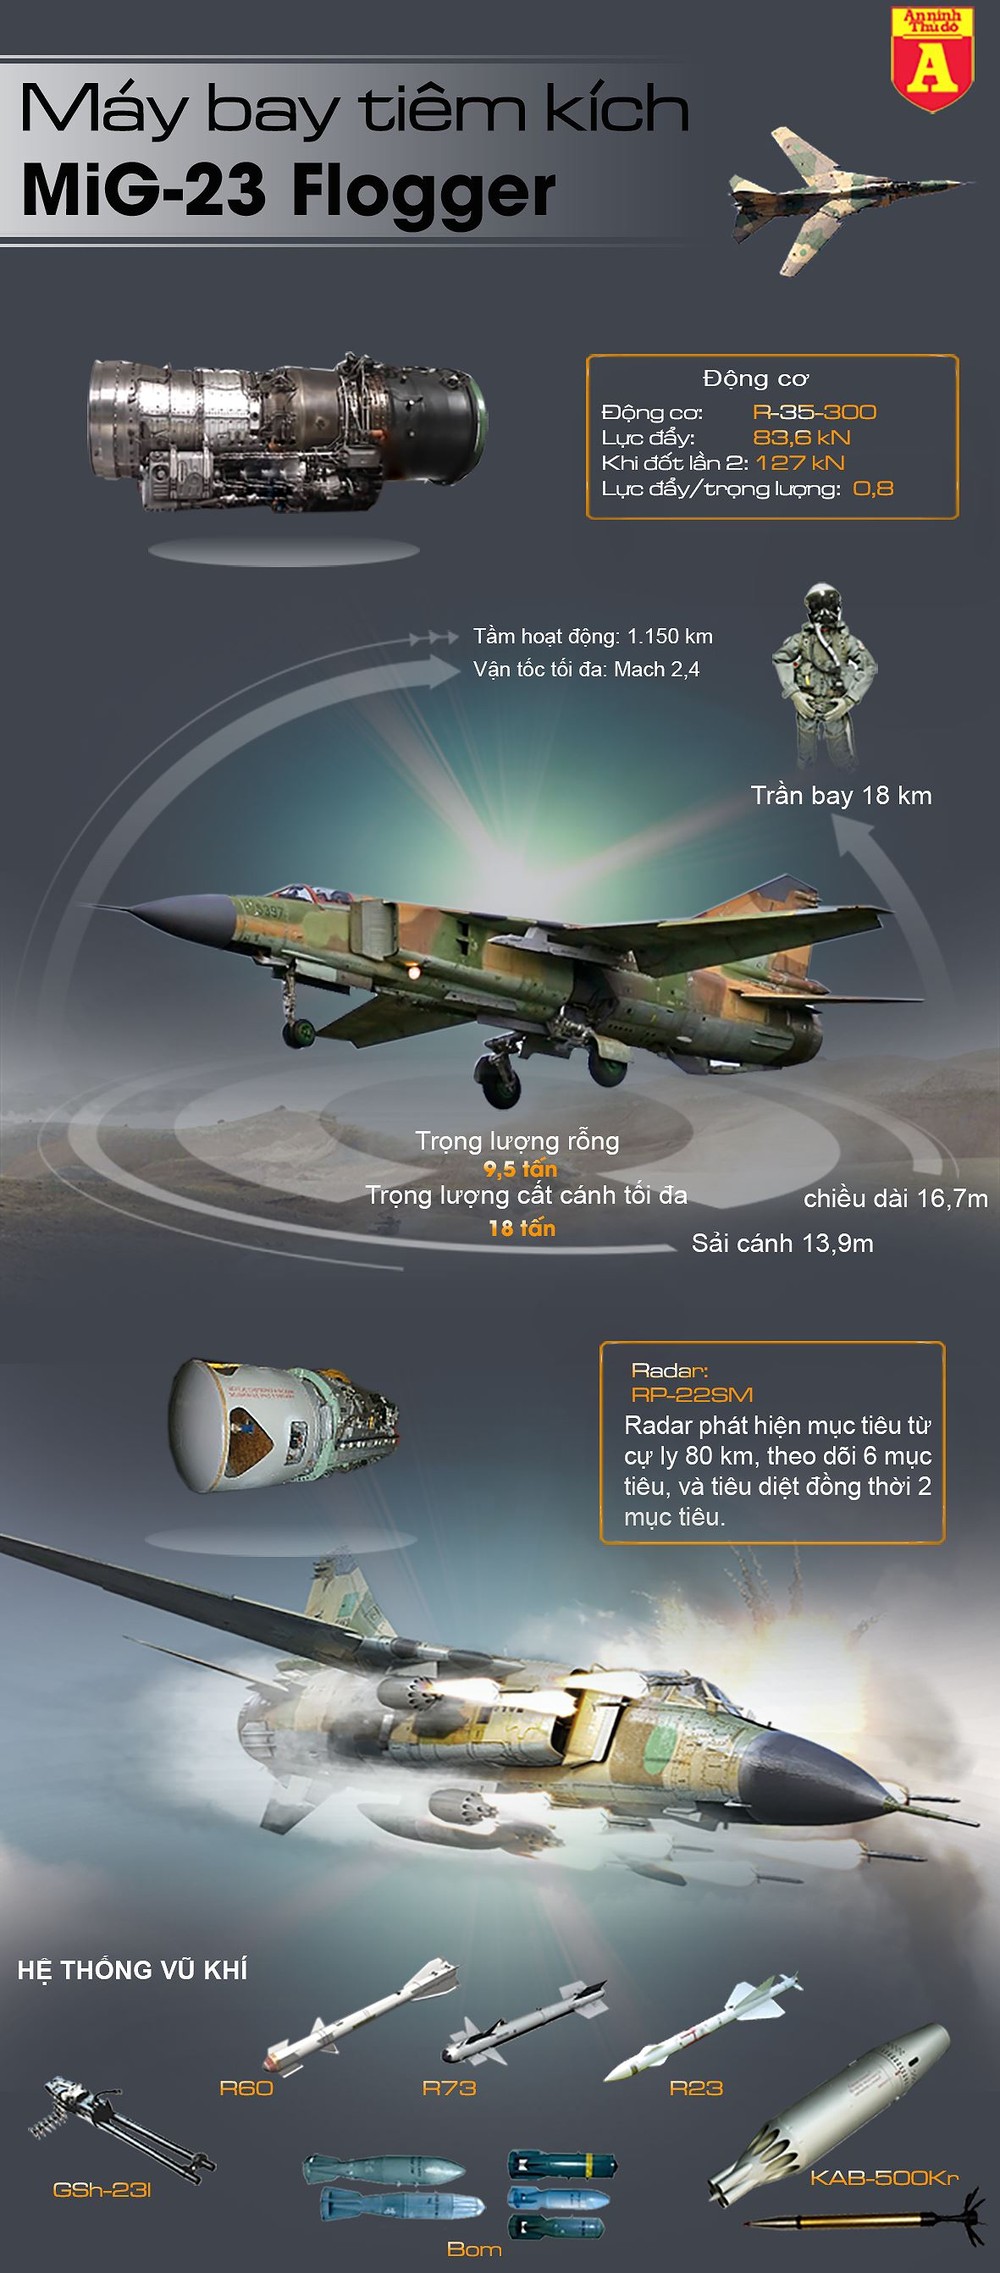 [Infographic] "Đôi cánh ma thuật" của không quân Syria ngày đêm dội hỏa lực xuống đầu phiến quân ảnh 3